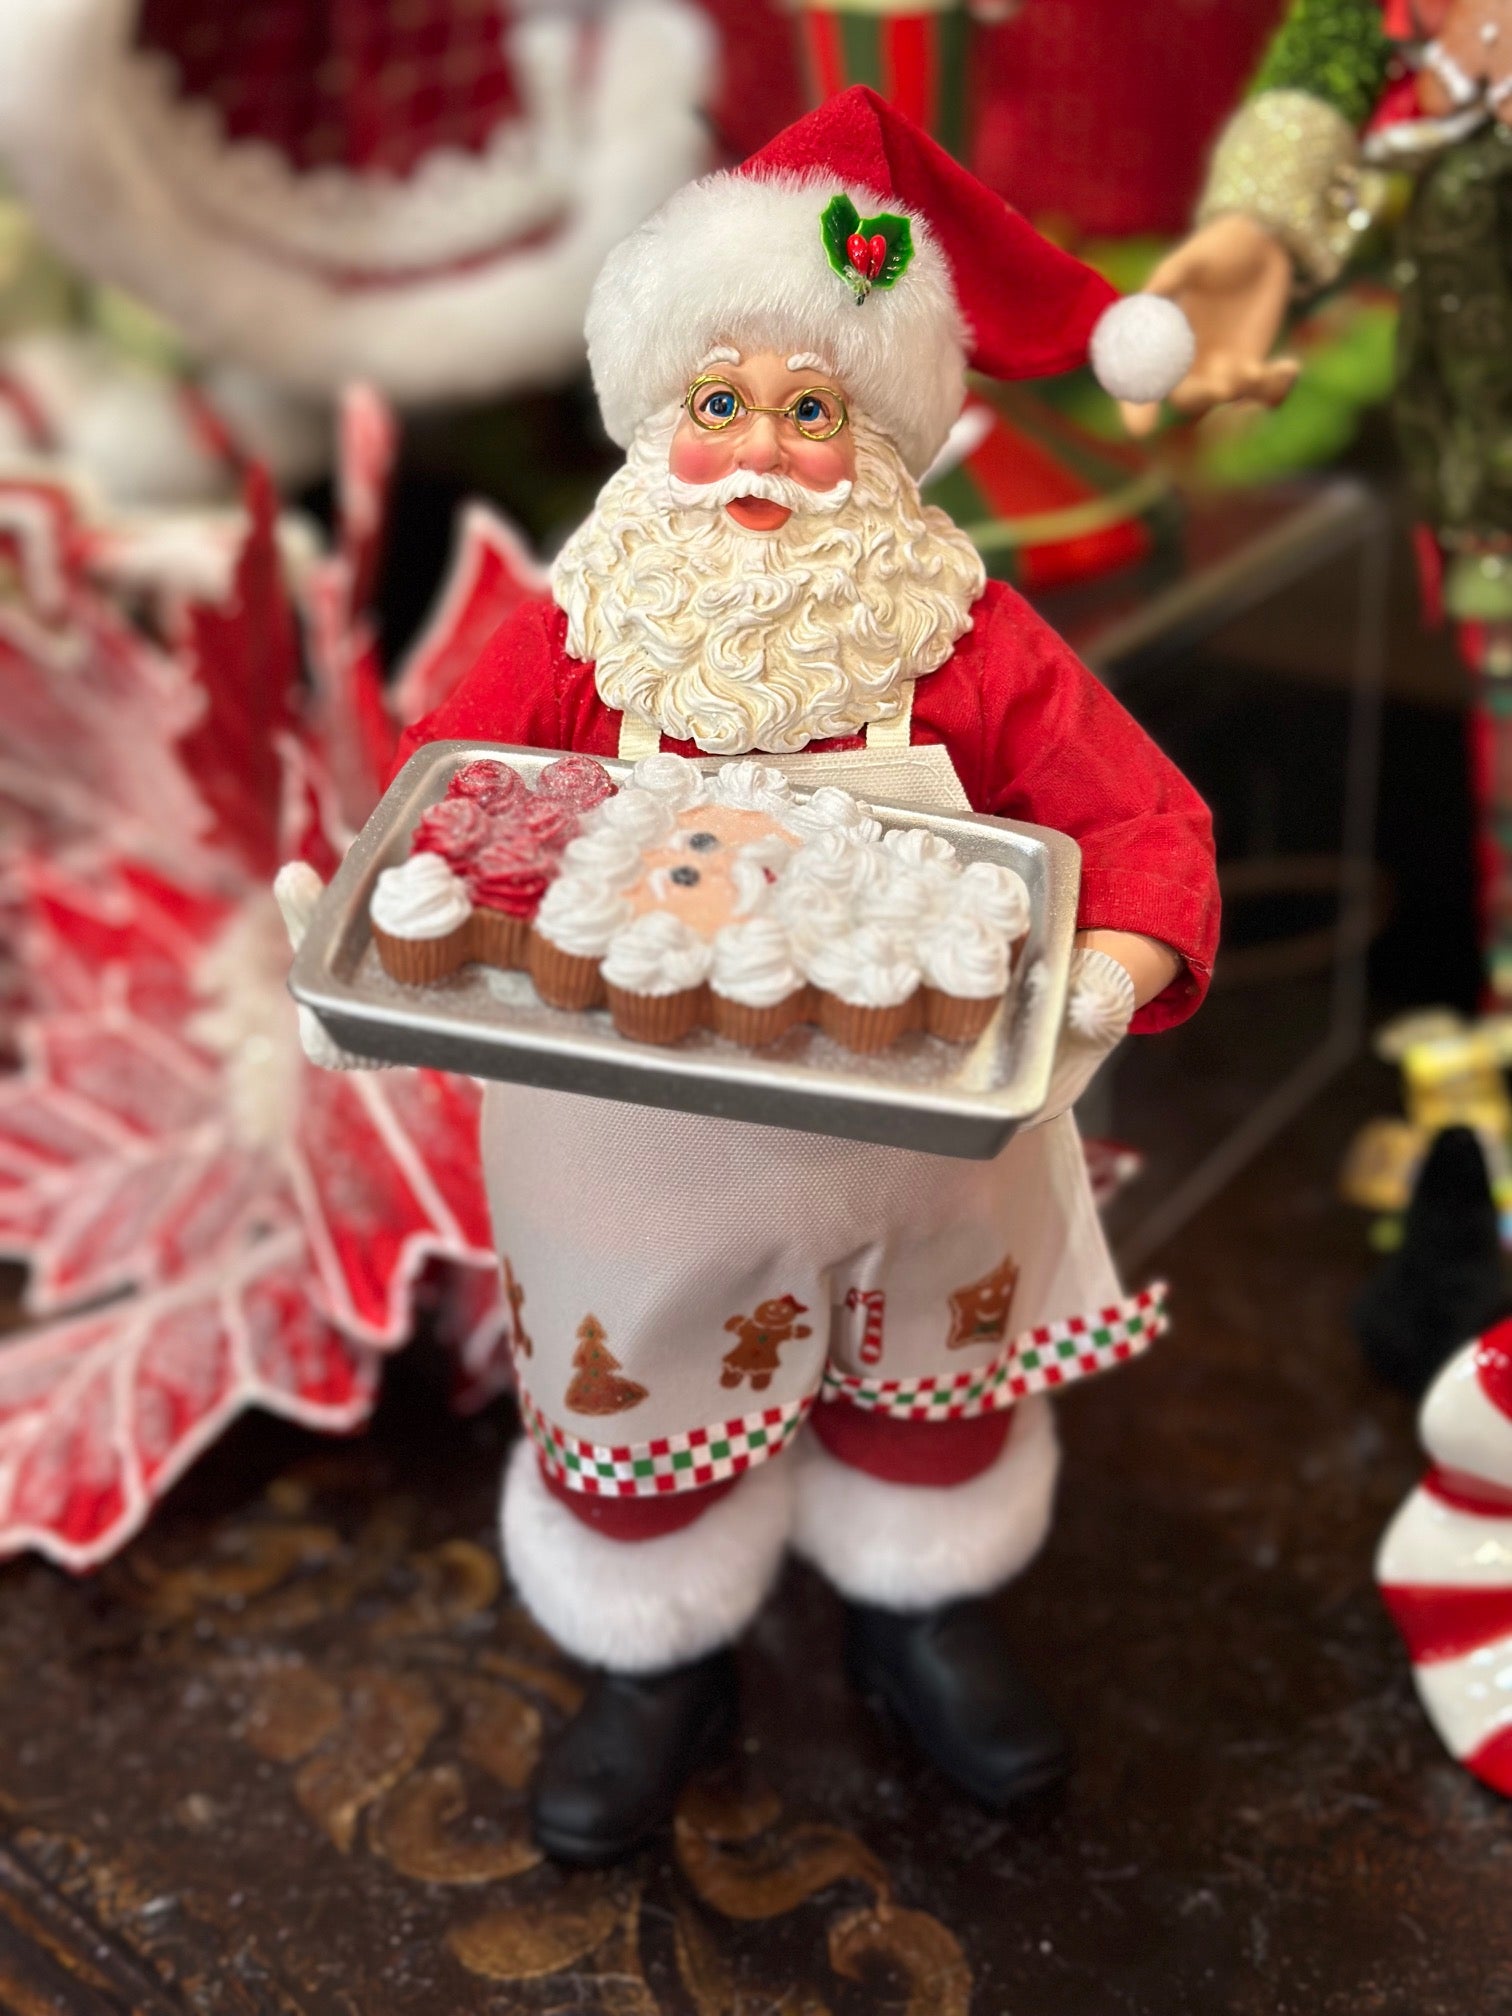 Baking Santa with Tray of Cupcakes